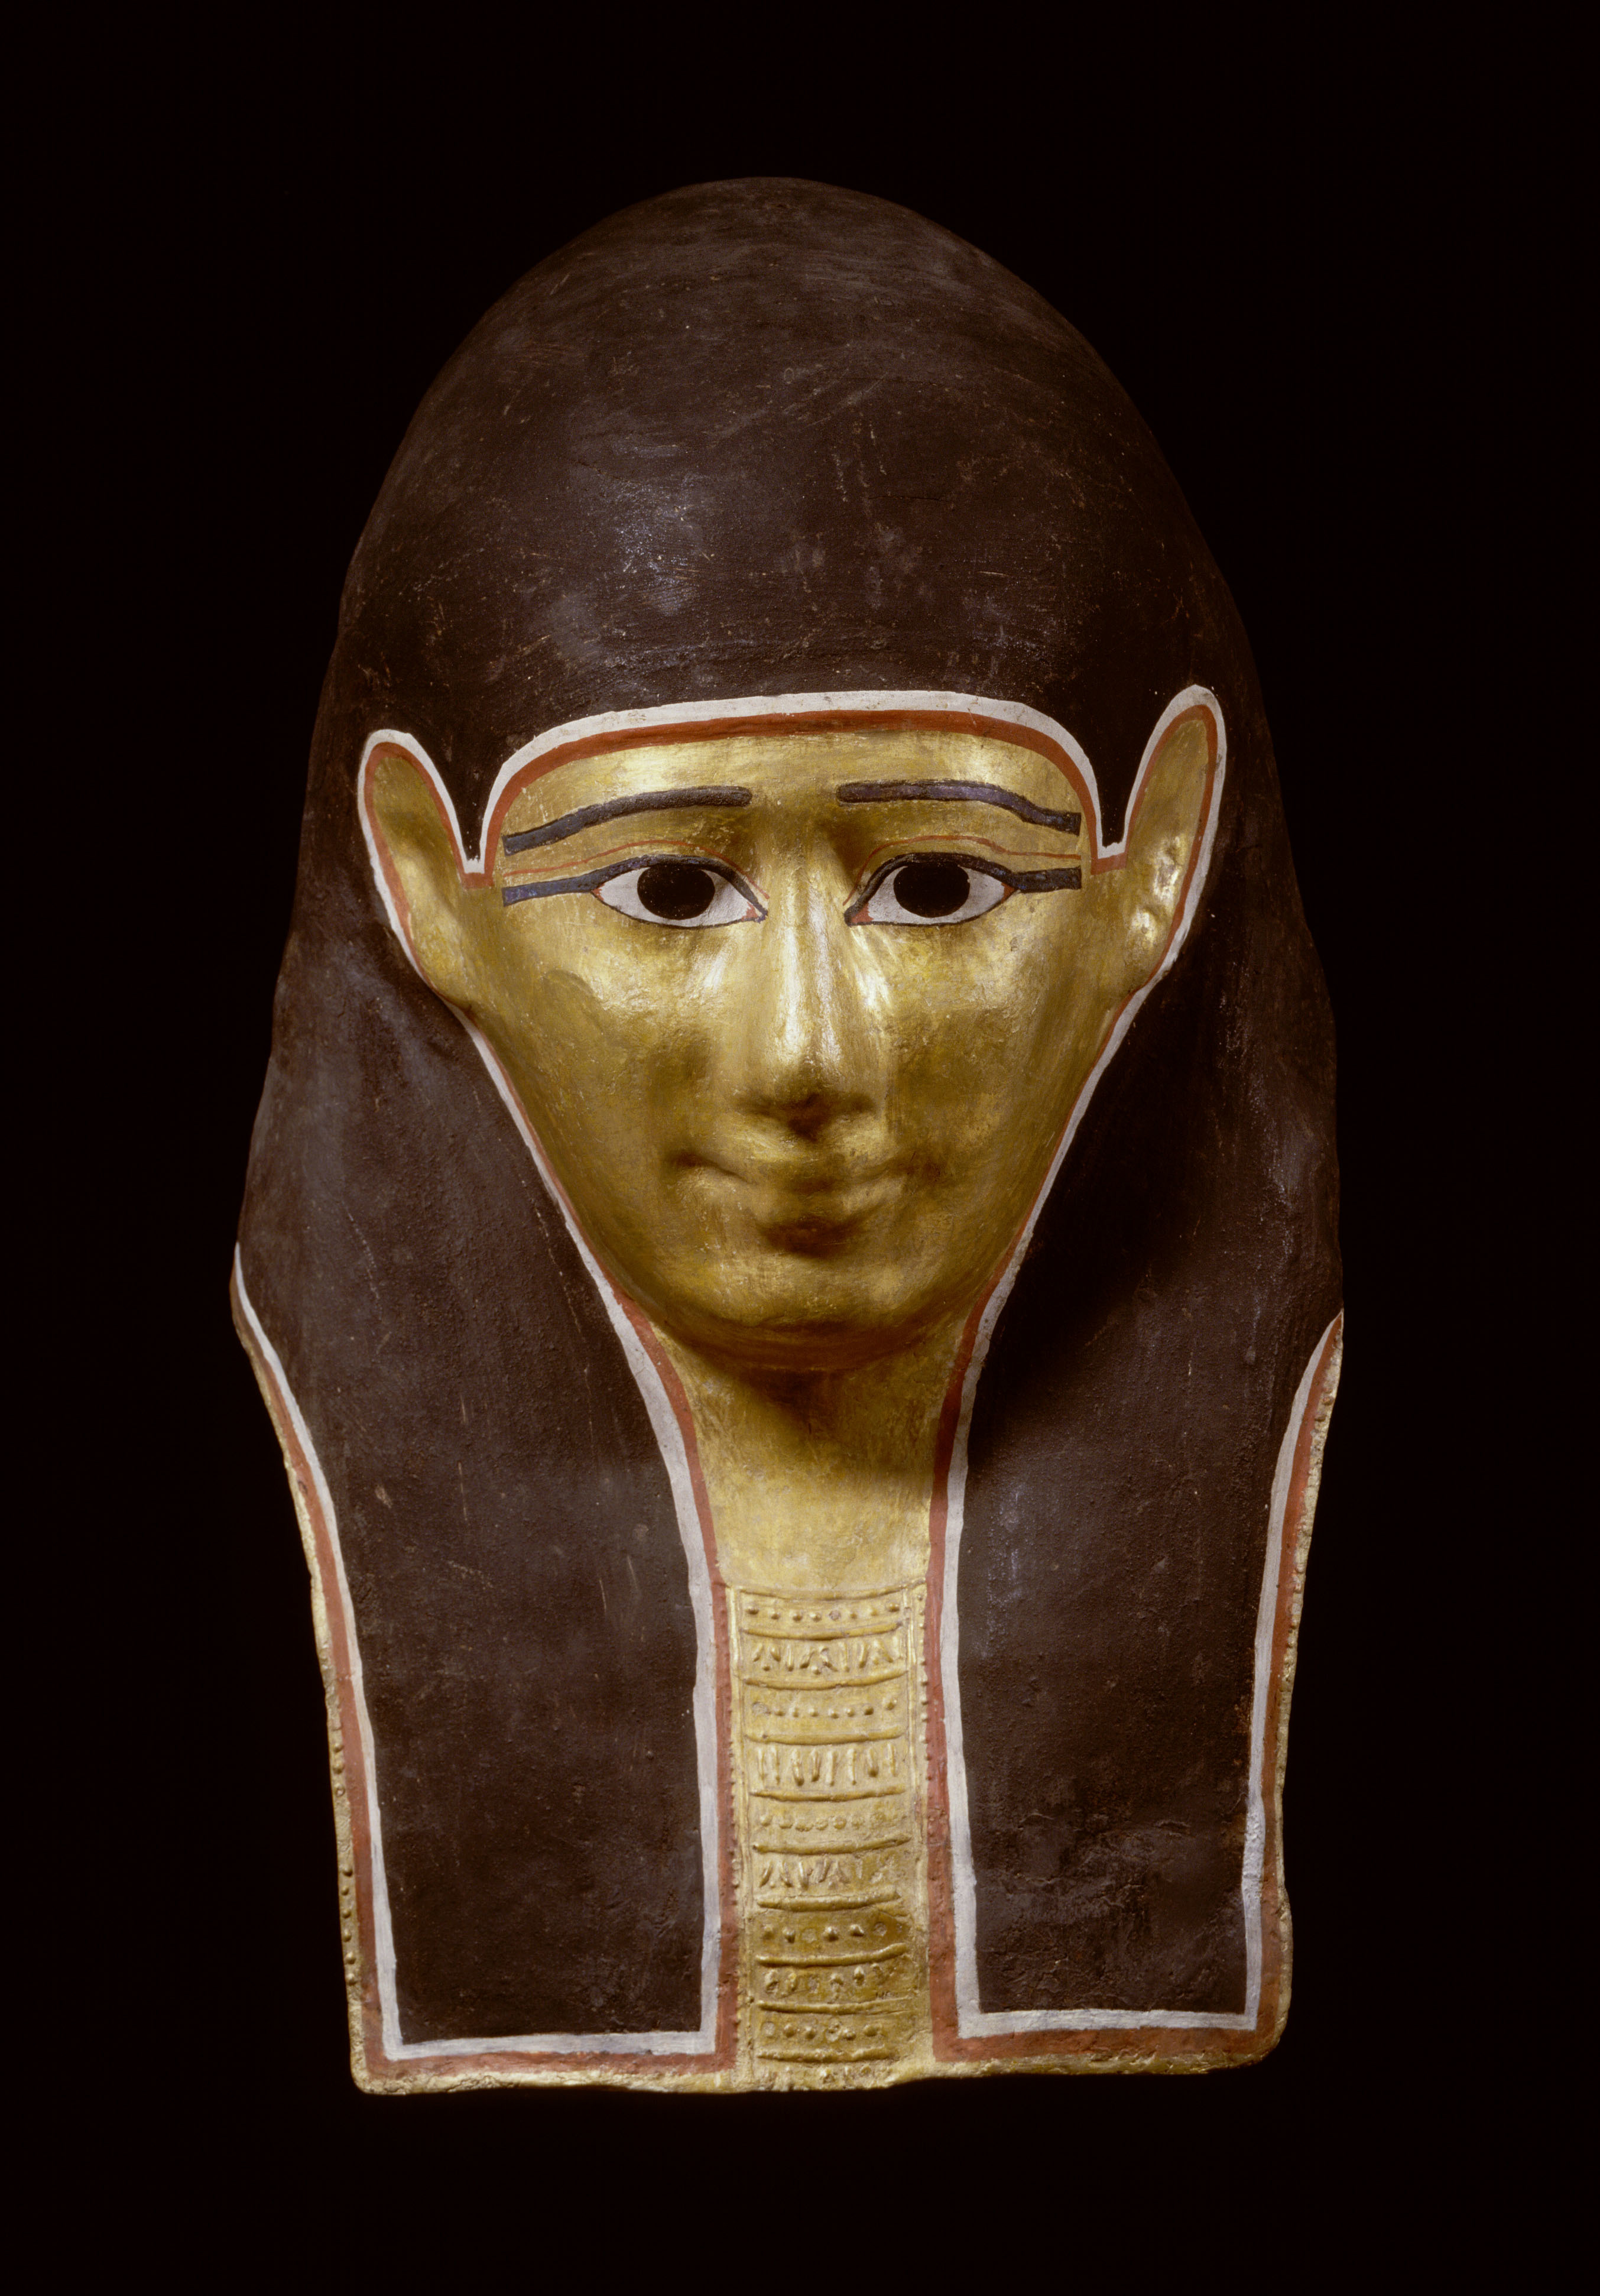 「金彩のミイラマスク」 グレコ・ローマン時代 長さ48.5cm、幅28cm、厚さ14cm